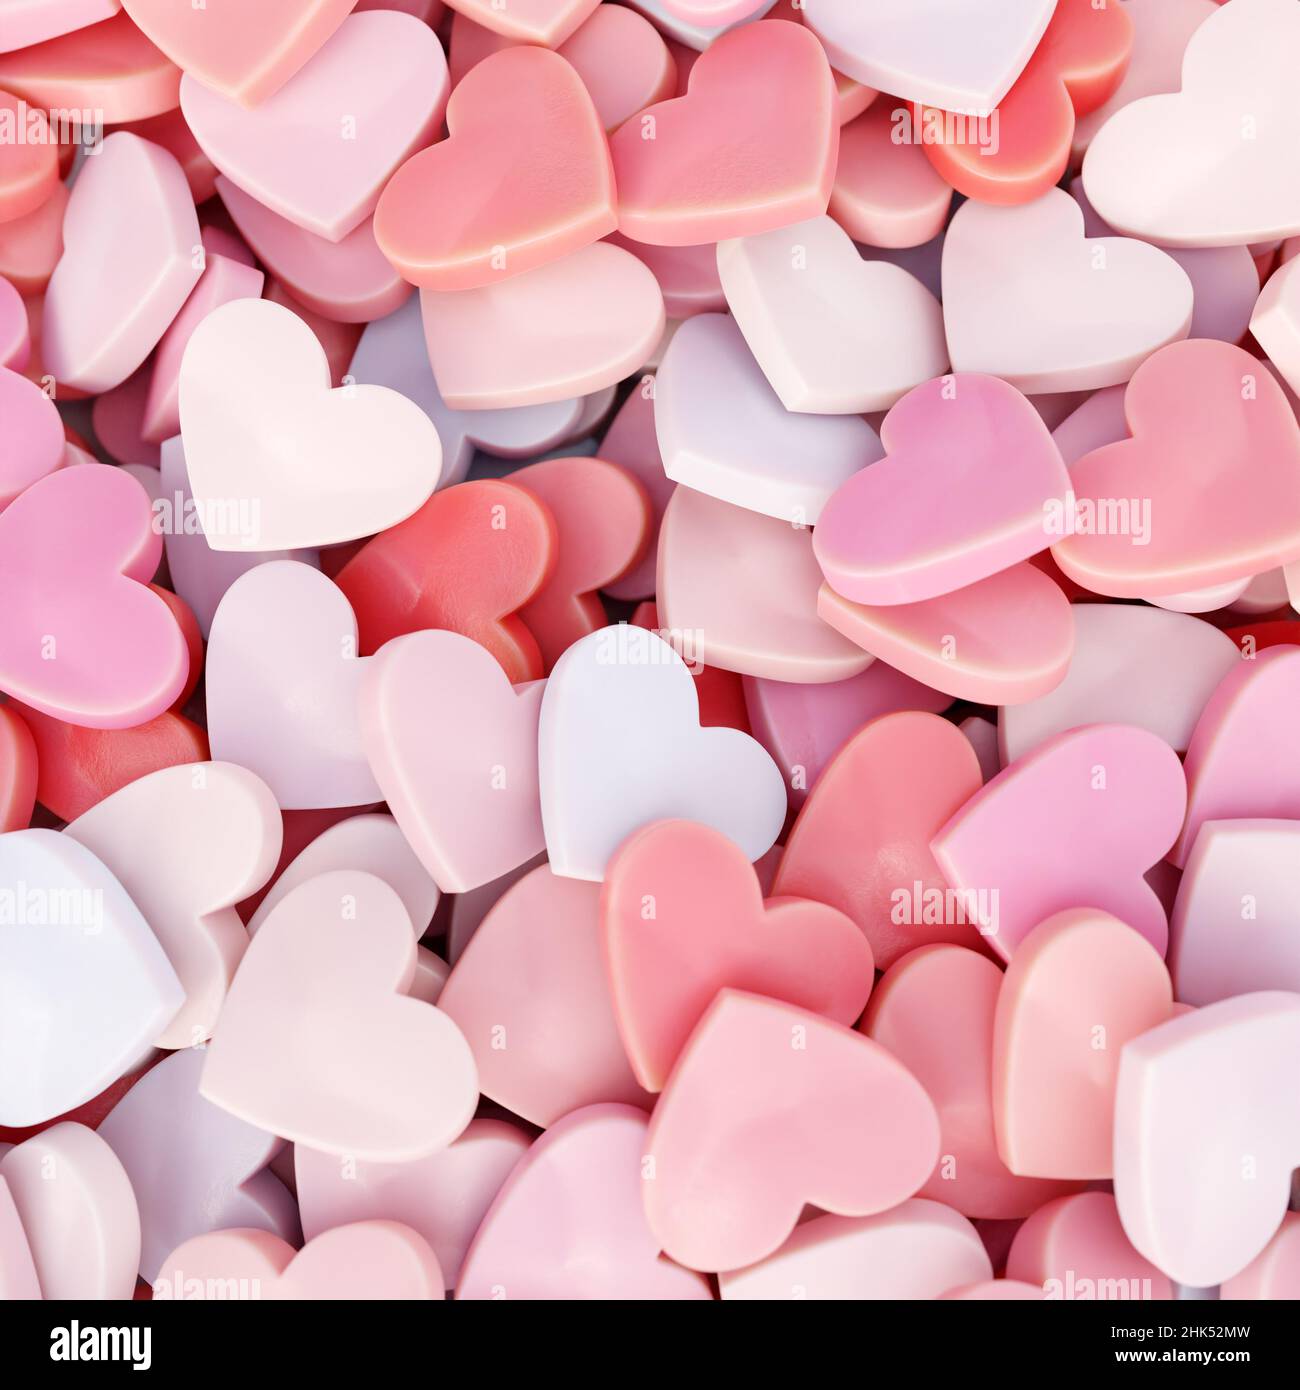 3D rendering di un mucchio di caramelle rosate e rosate a forma di cuore visto dall'alto Foto Stock